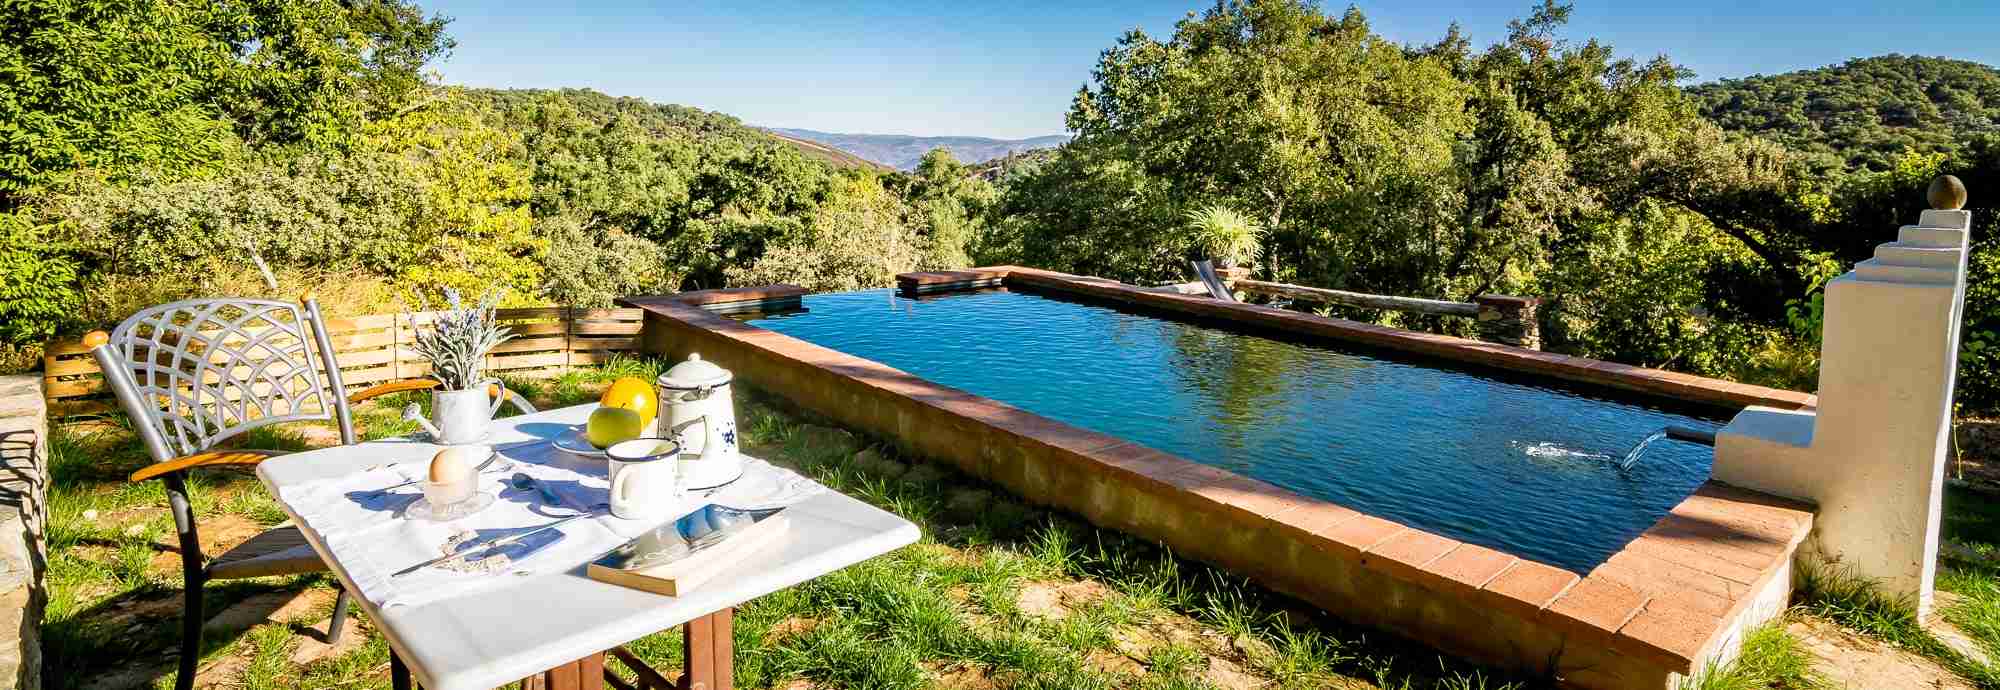 Casa de piedra con piscina natural en los bosques de Andalucía